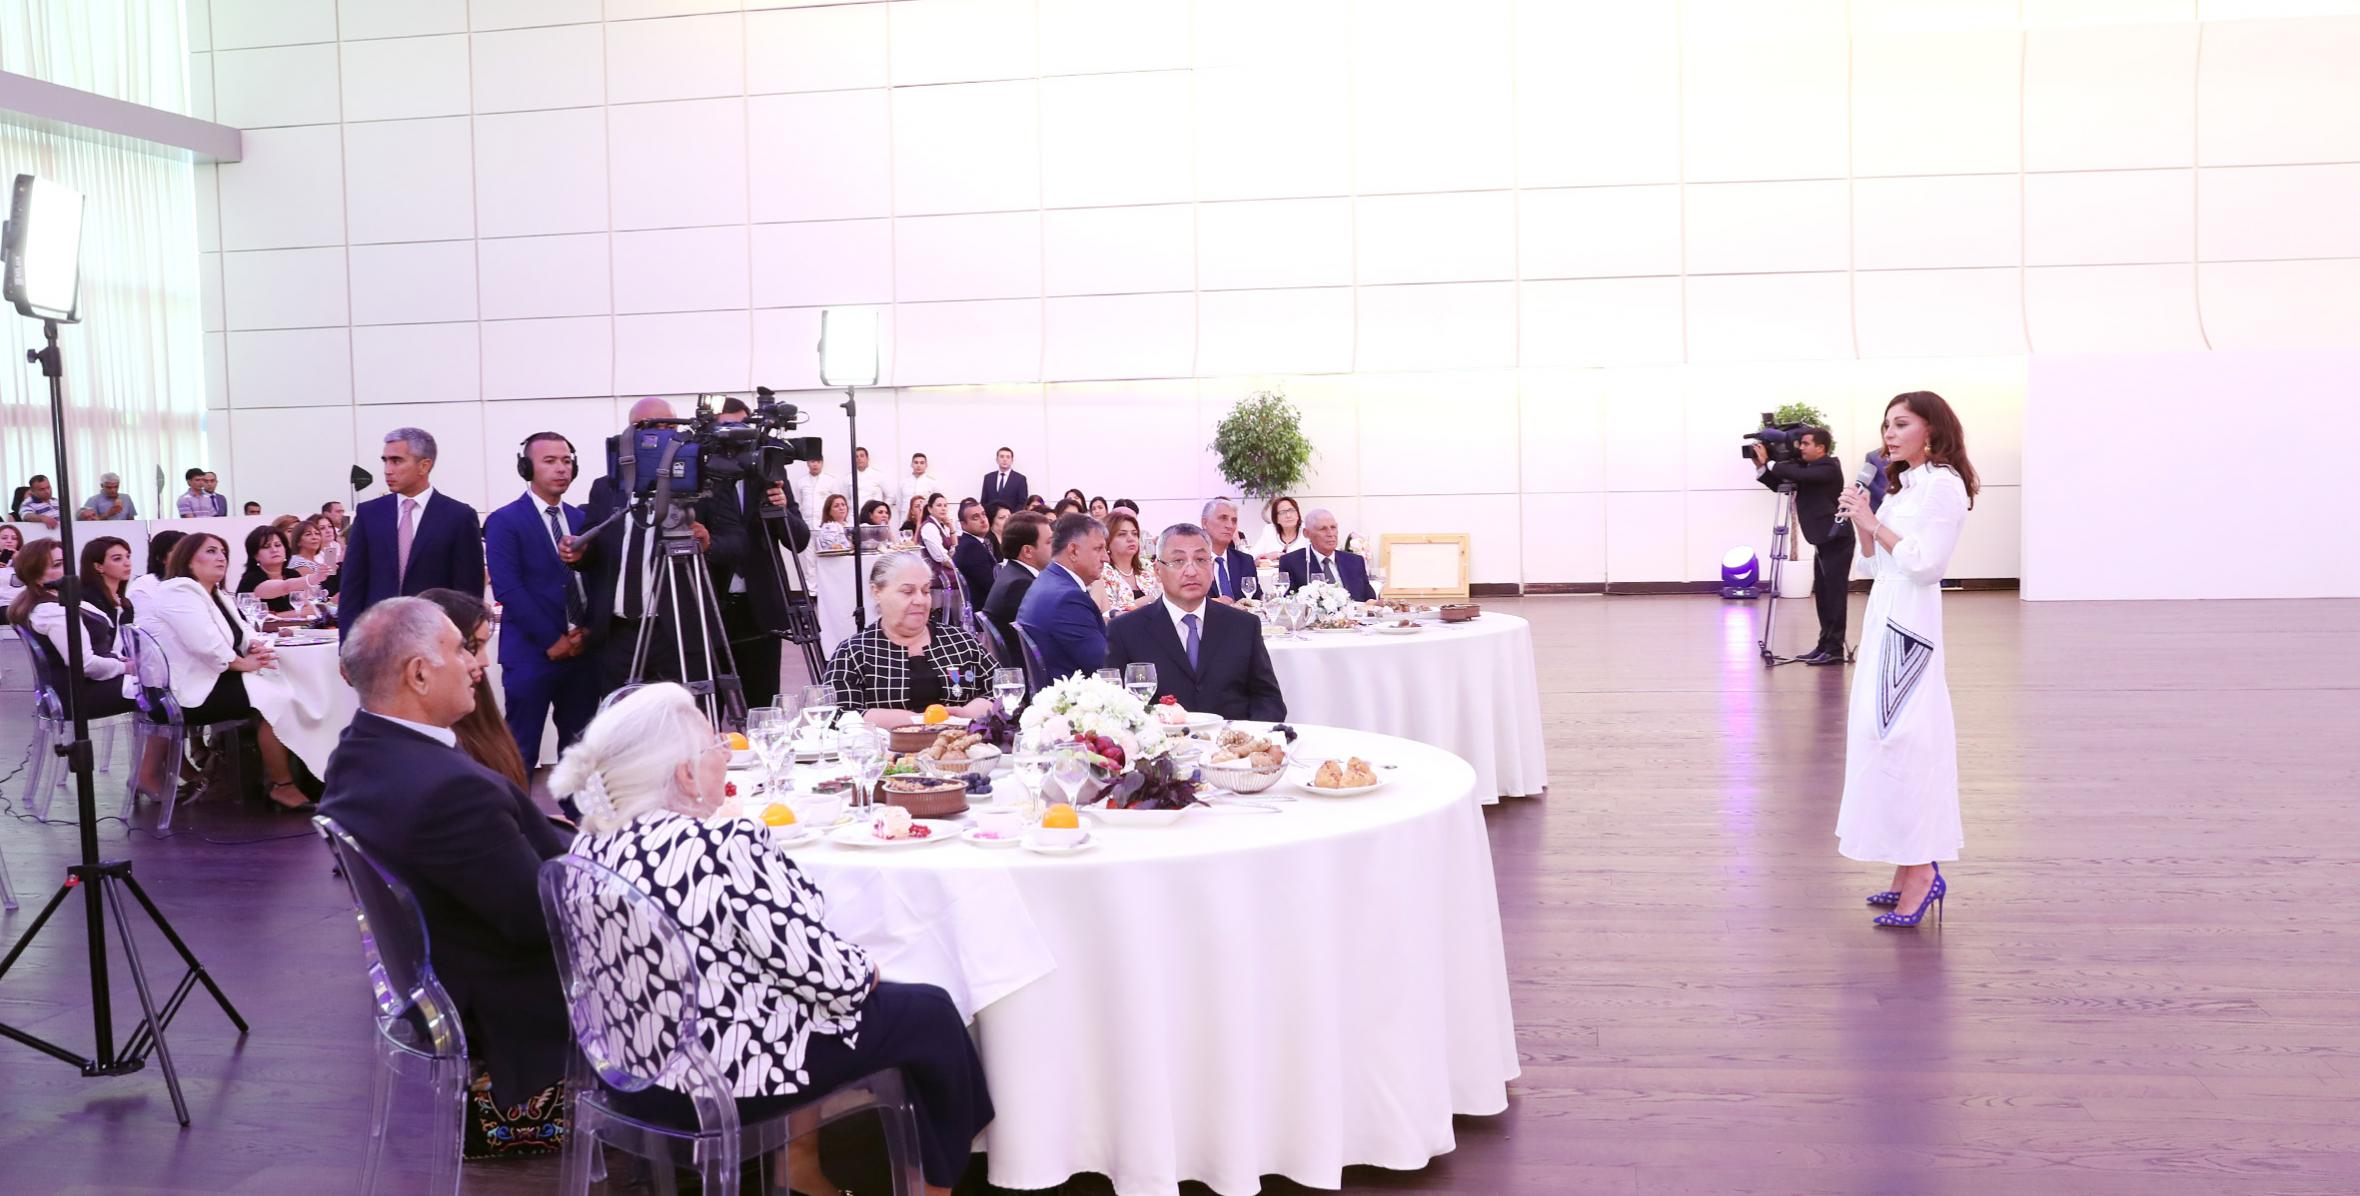 Первый вице-президент Азербайджана Мехрибан Алиева приняла участие в мероприятии вынужденных переселенцев